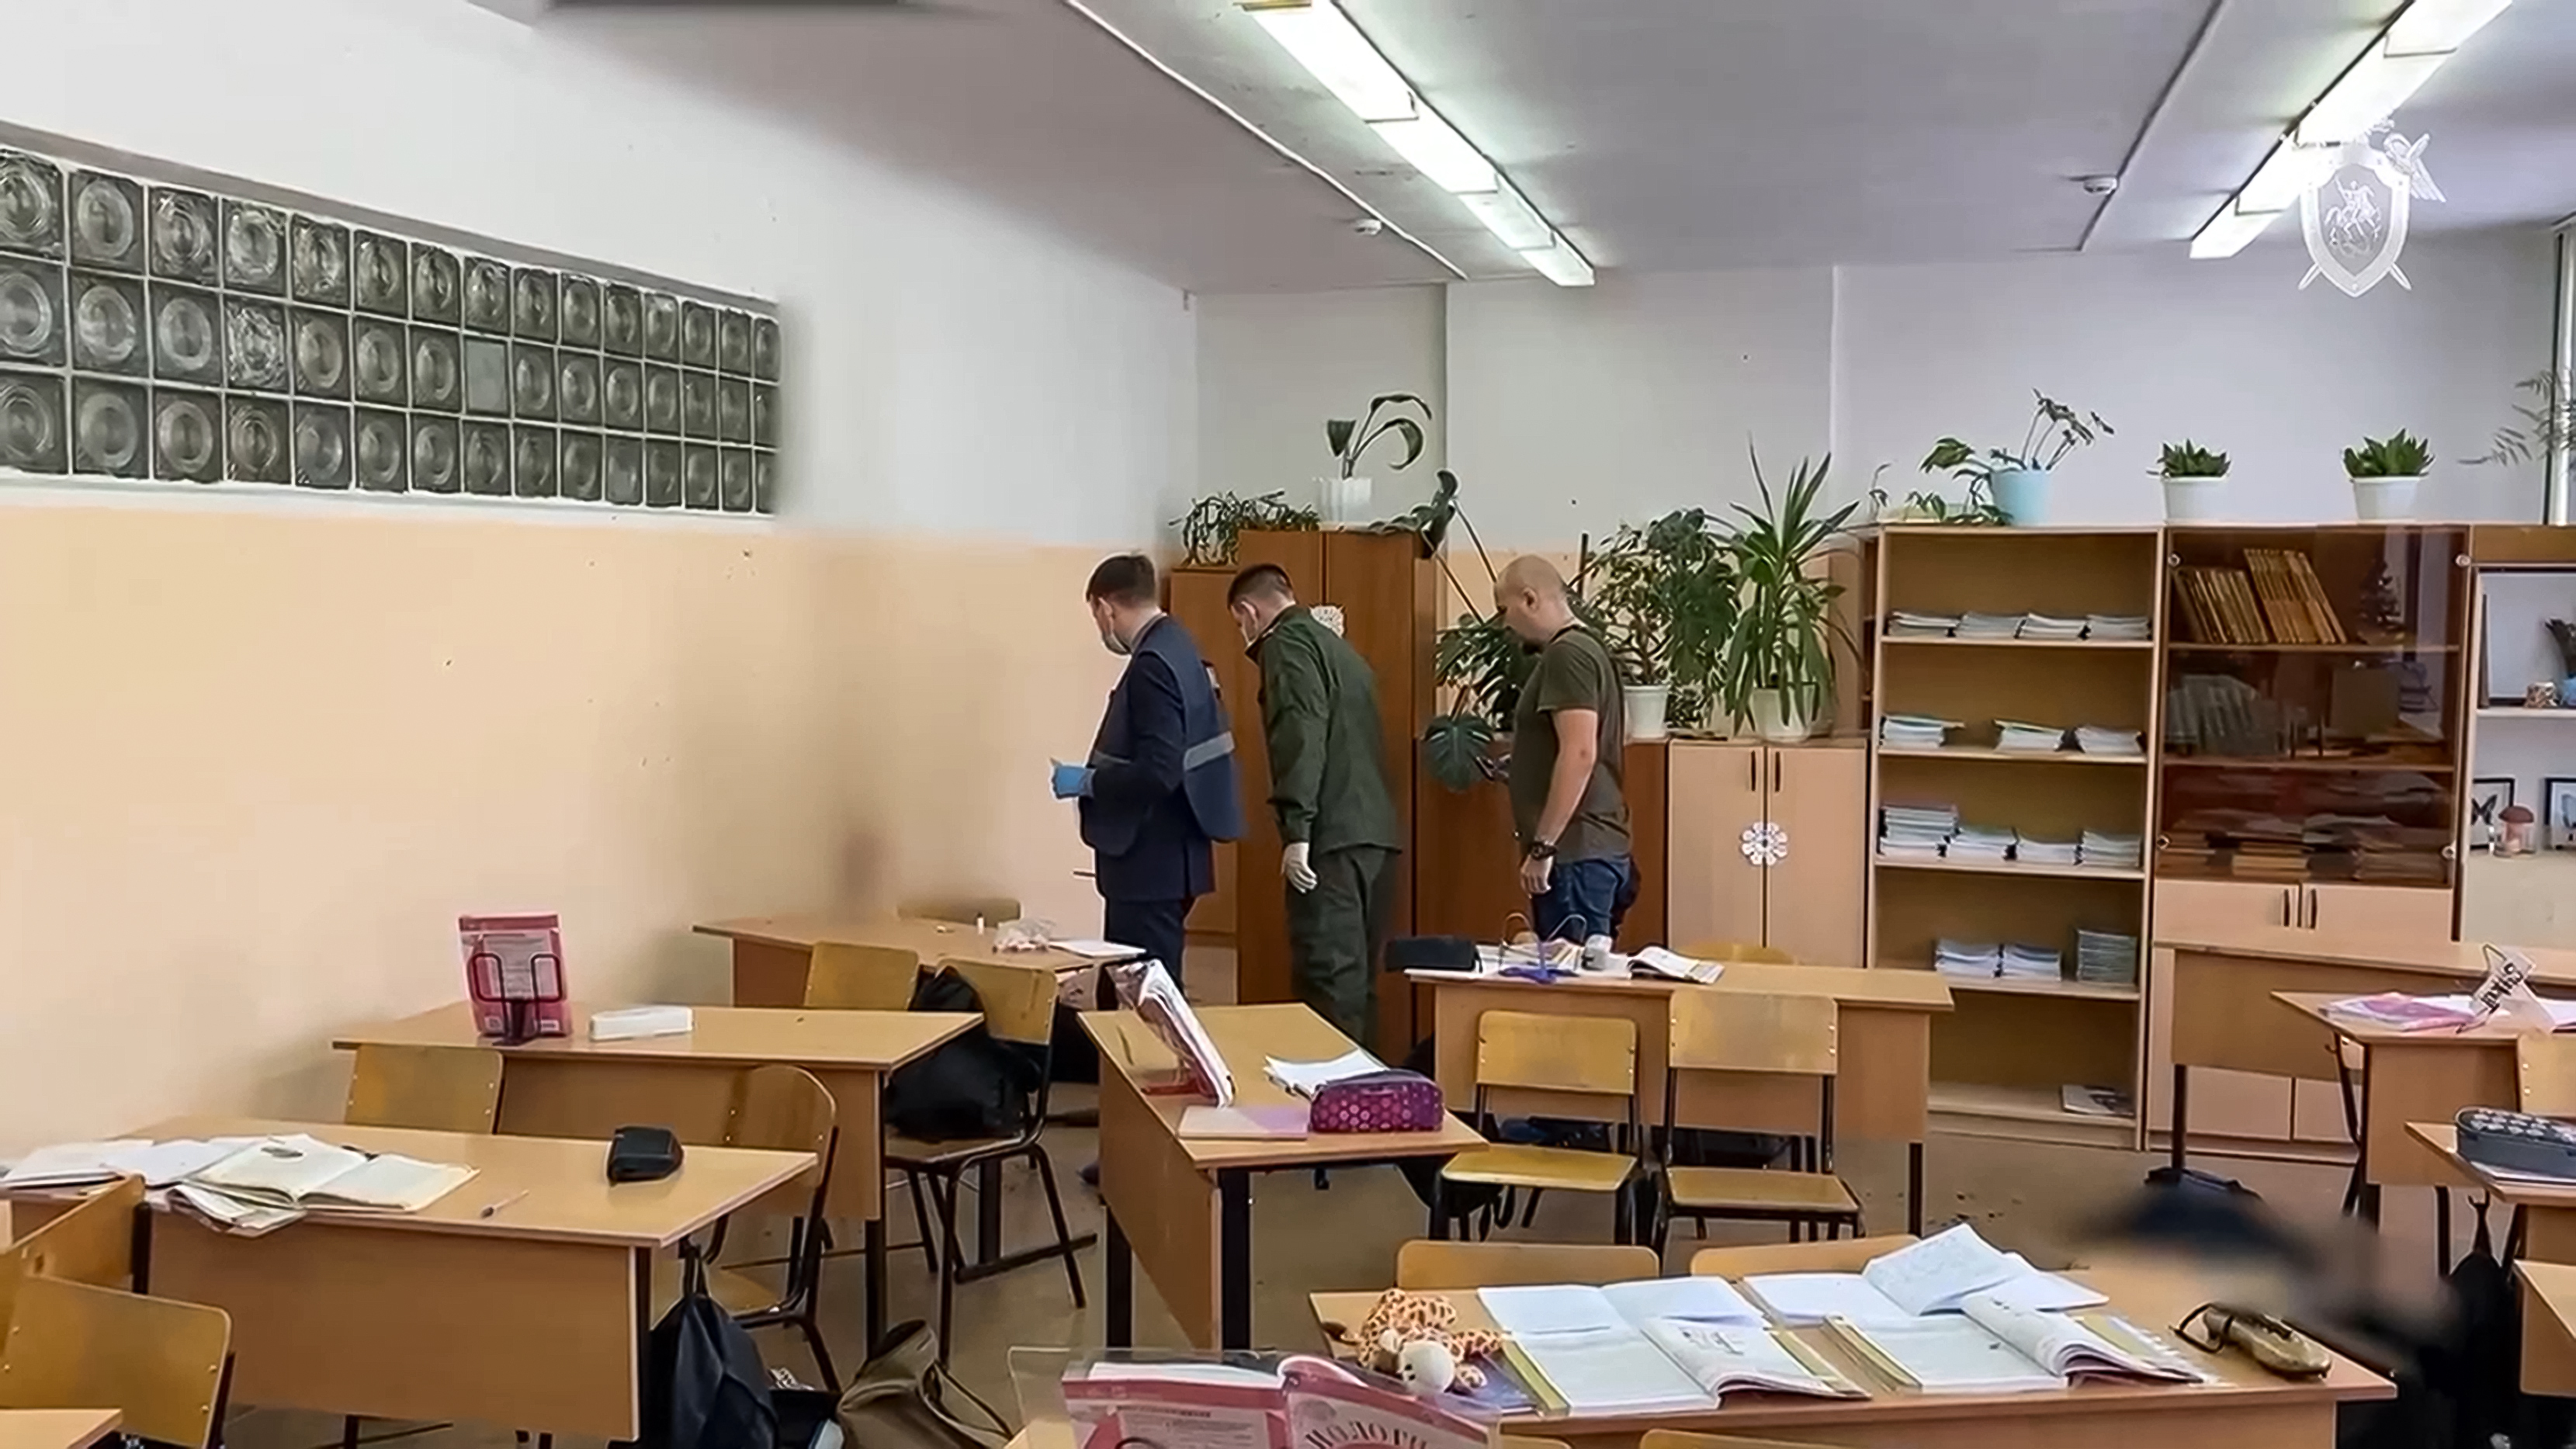 Adolescente rusa dispara contra compañeros en la escuela; hay un muerto y 5 heridos